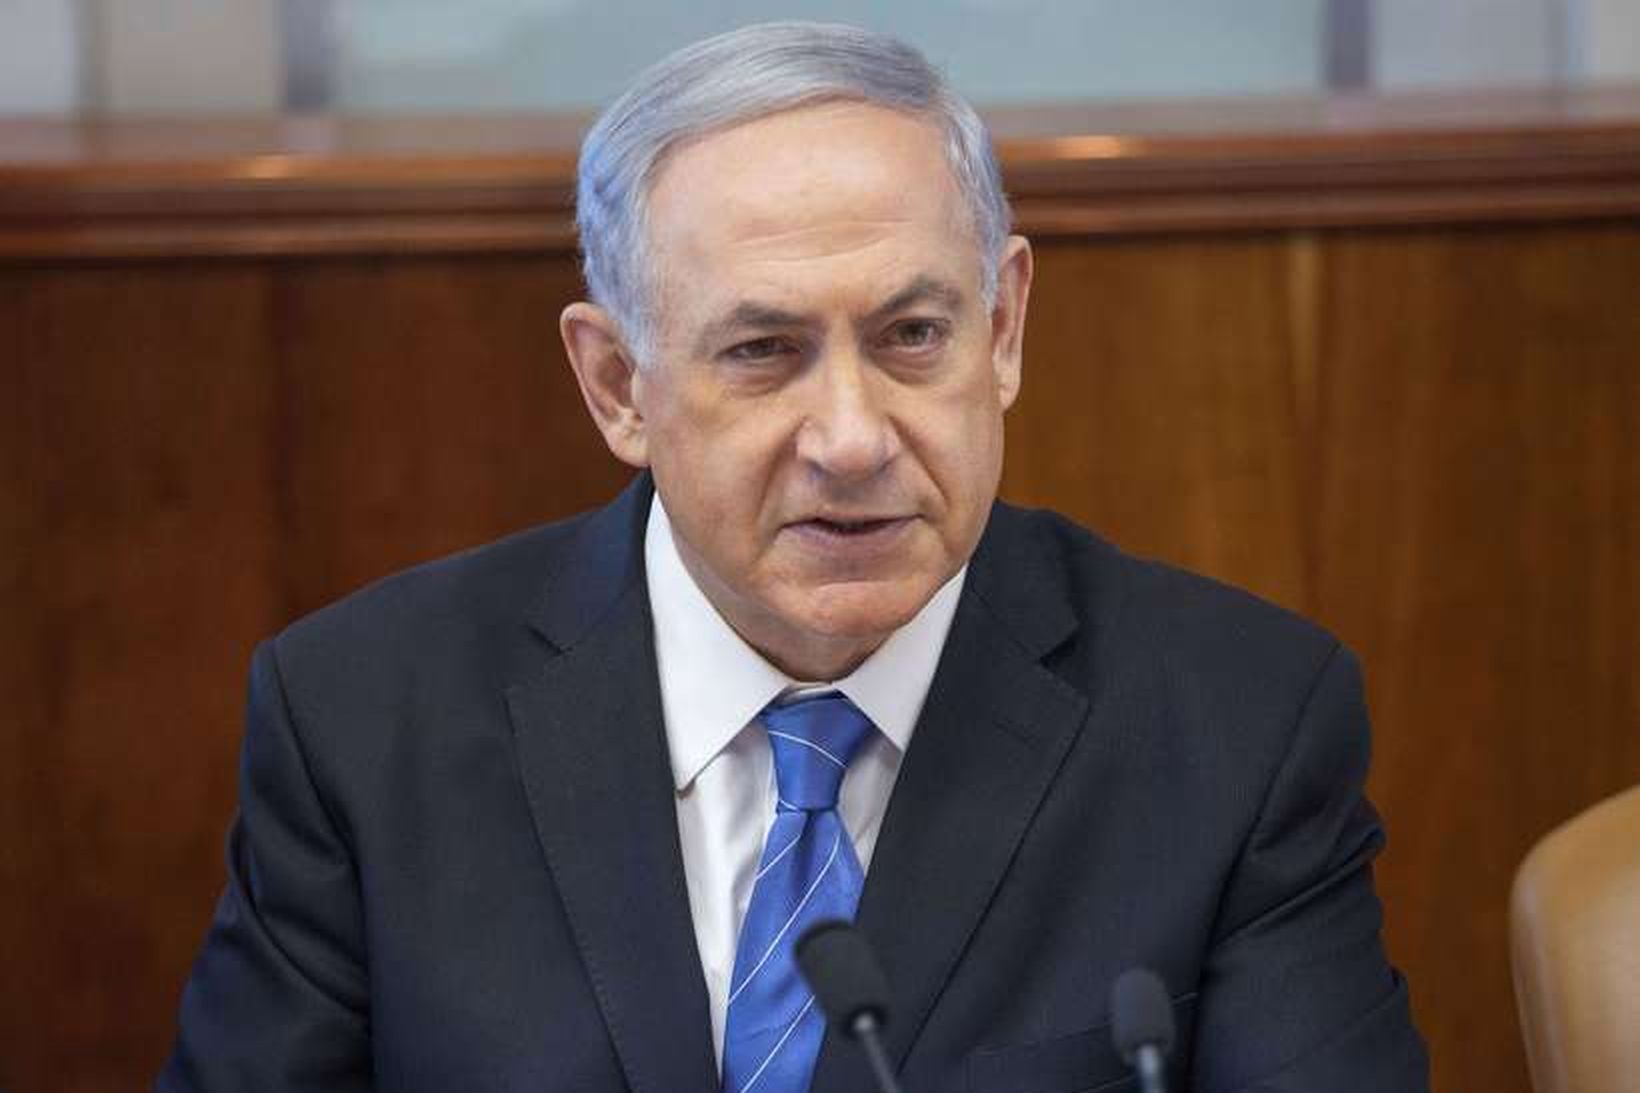 Benjamin Netanyahu, forsætisráðherra Ísraels, við upphaf ríkisstjórnarfundar í morgun.